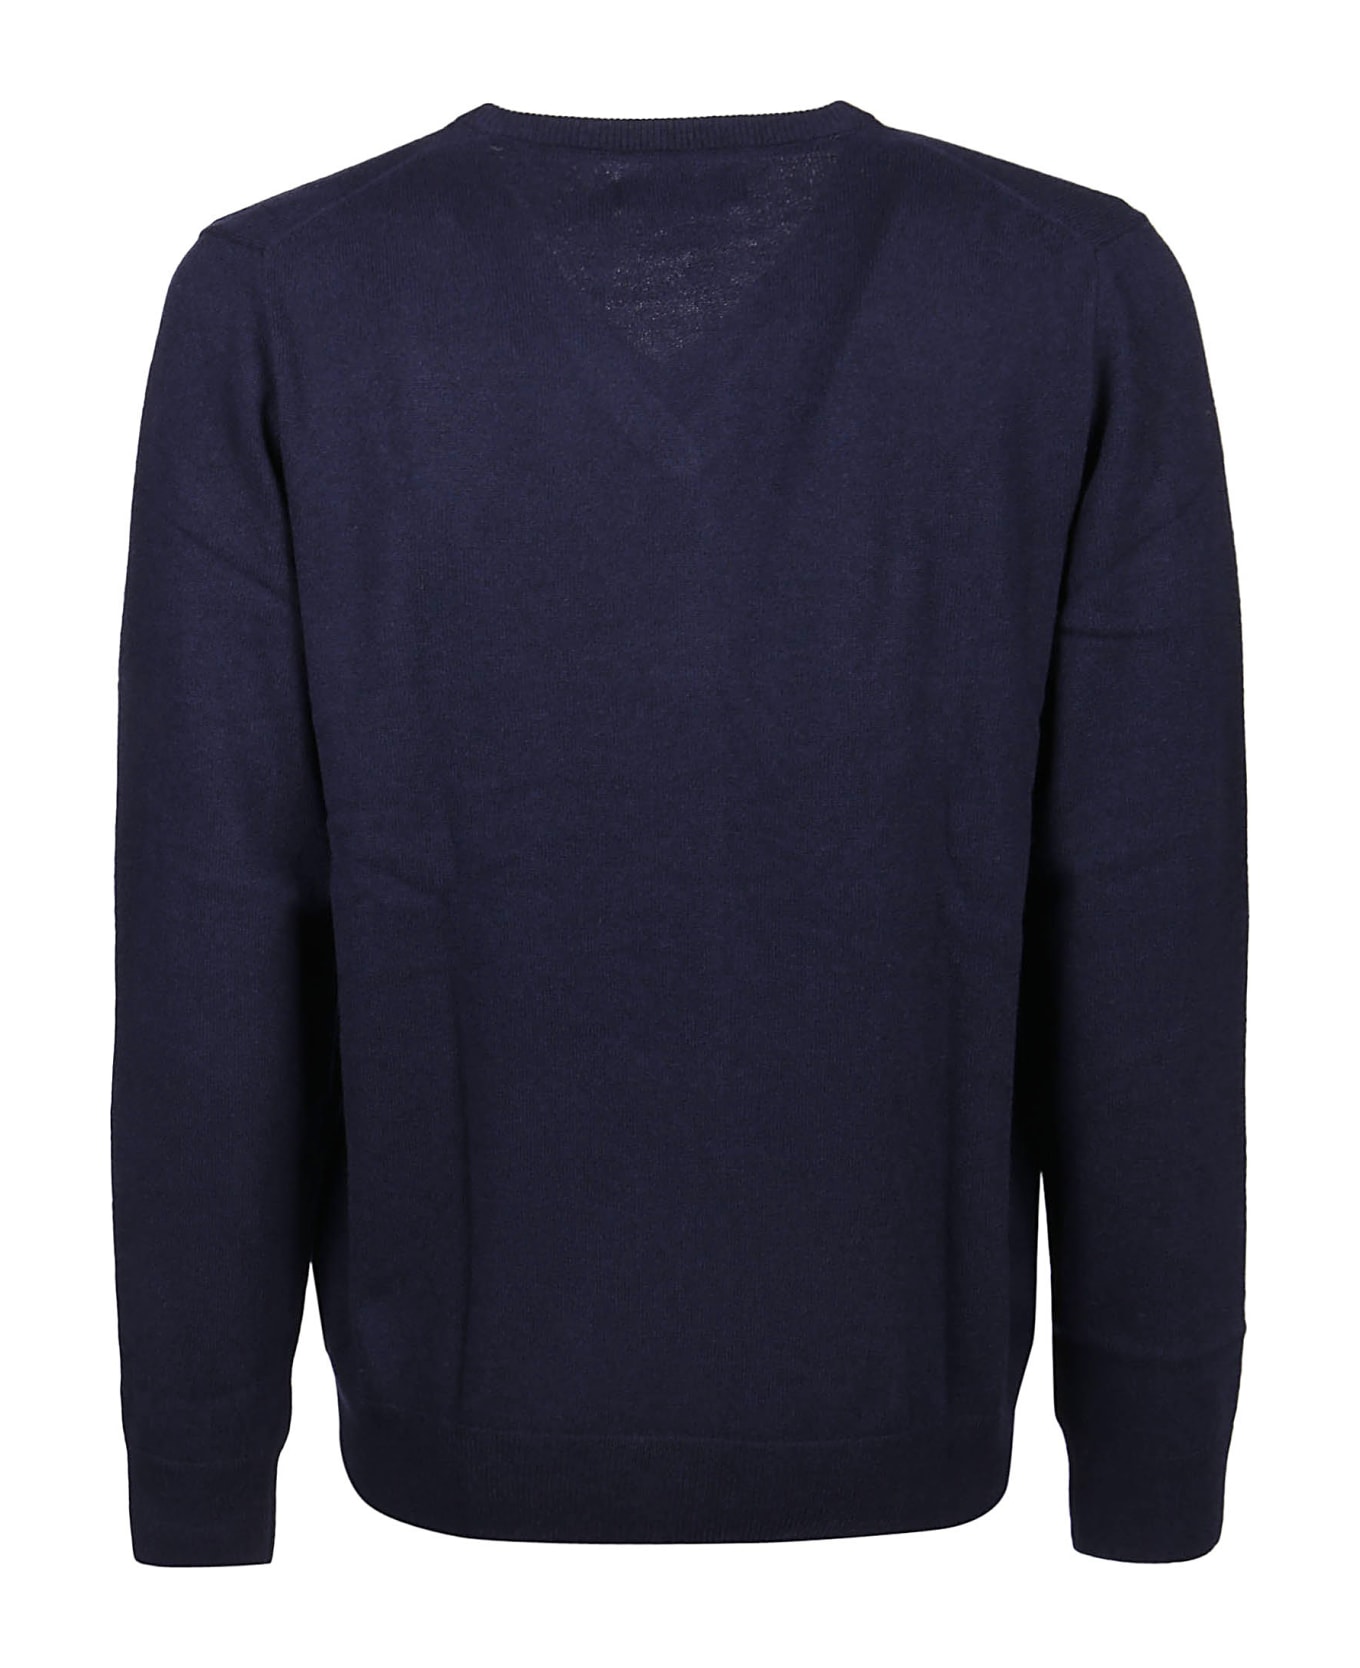 Polo Ralph Lauren Long Sleeve Sweater - Hunter Navy